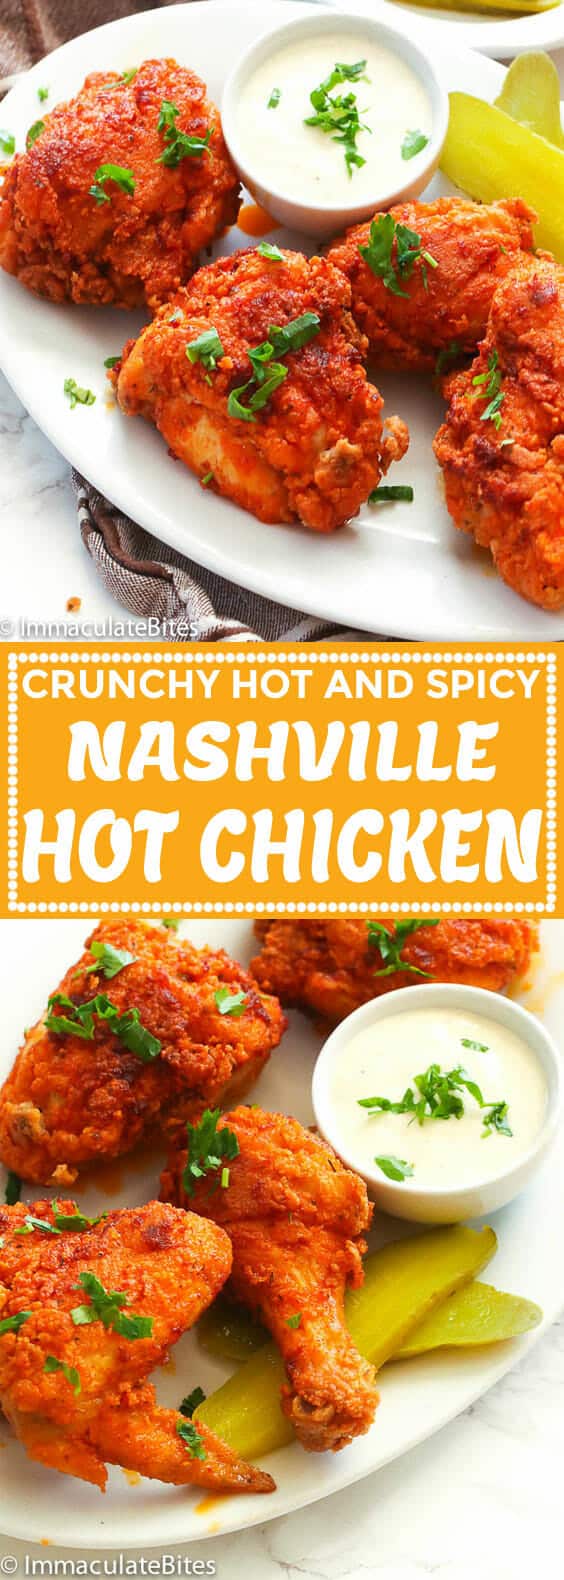 Nashville Hot Chicken - Immaculate Bites